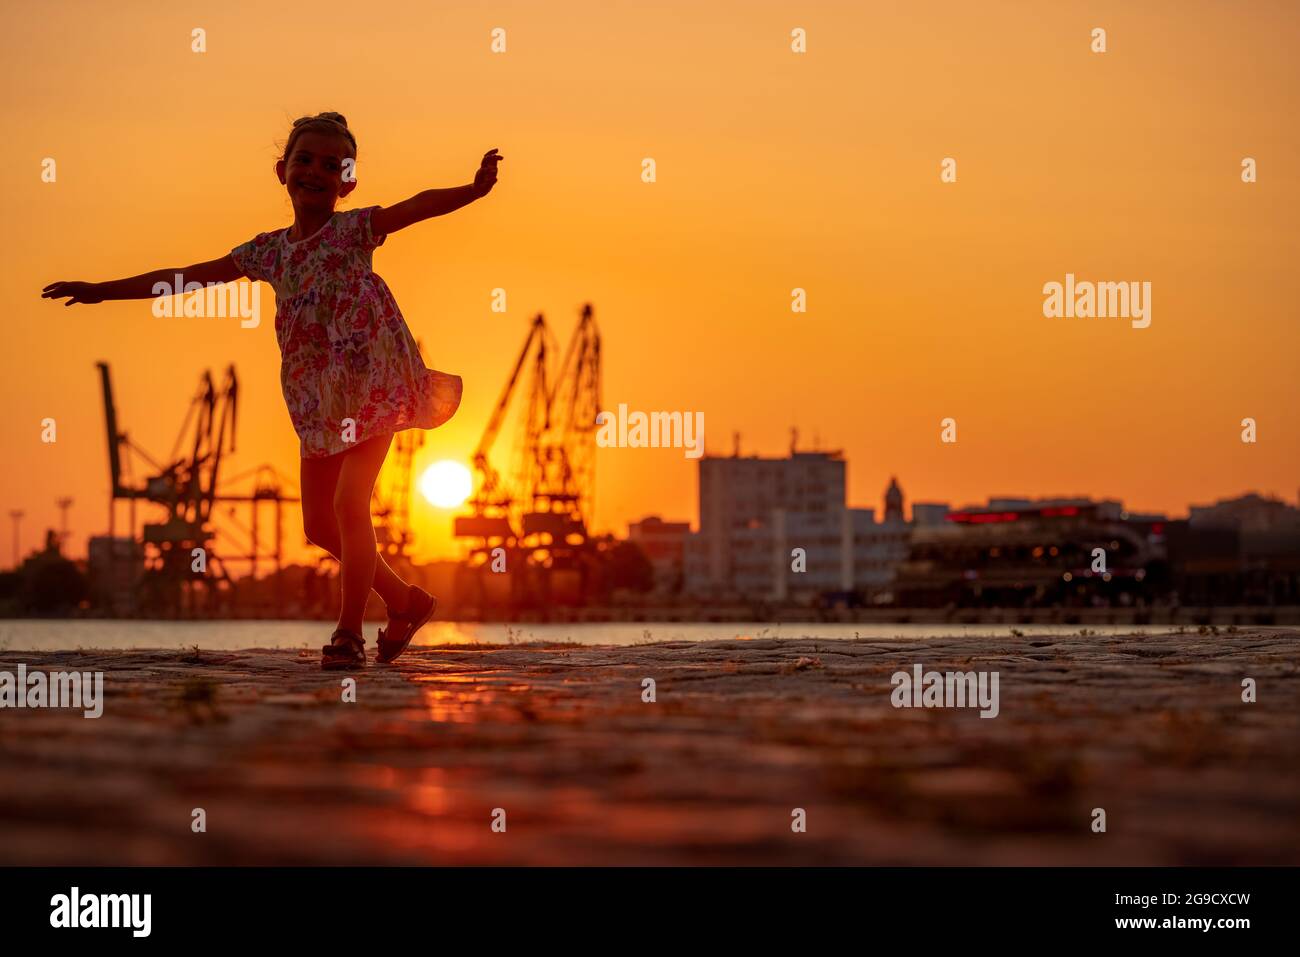 Petite fille dansant au coucher du soleil. Silhouttes de grues industrielles sur port de mer Varna, Bulgarie Banque D'Images